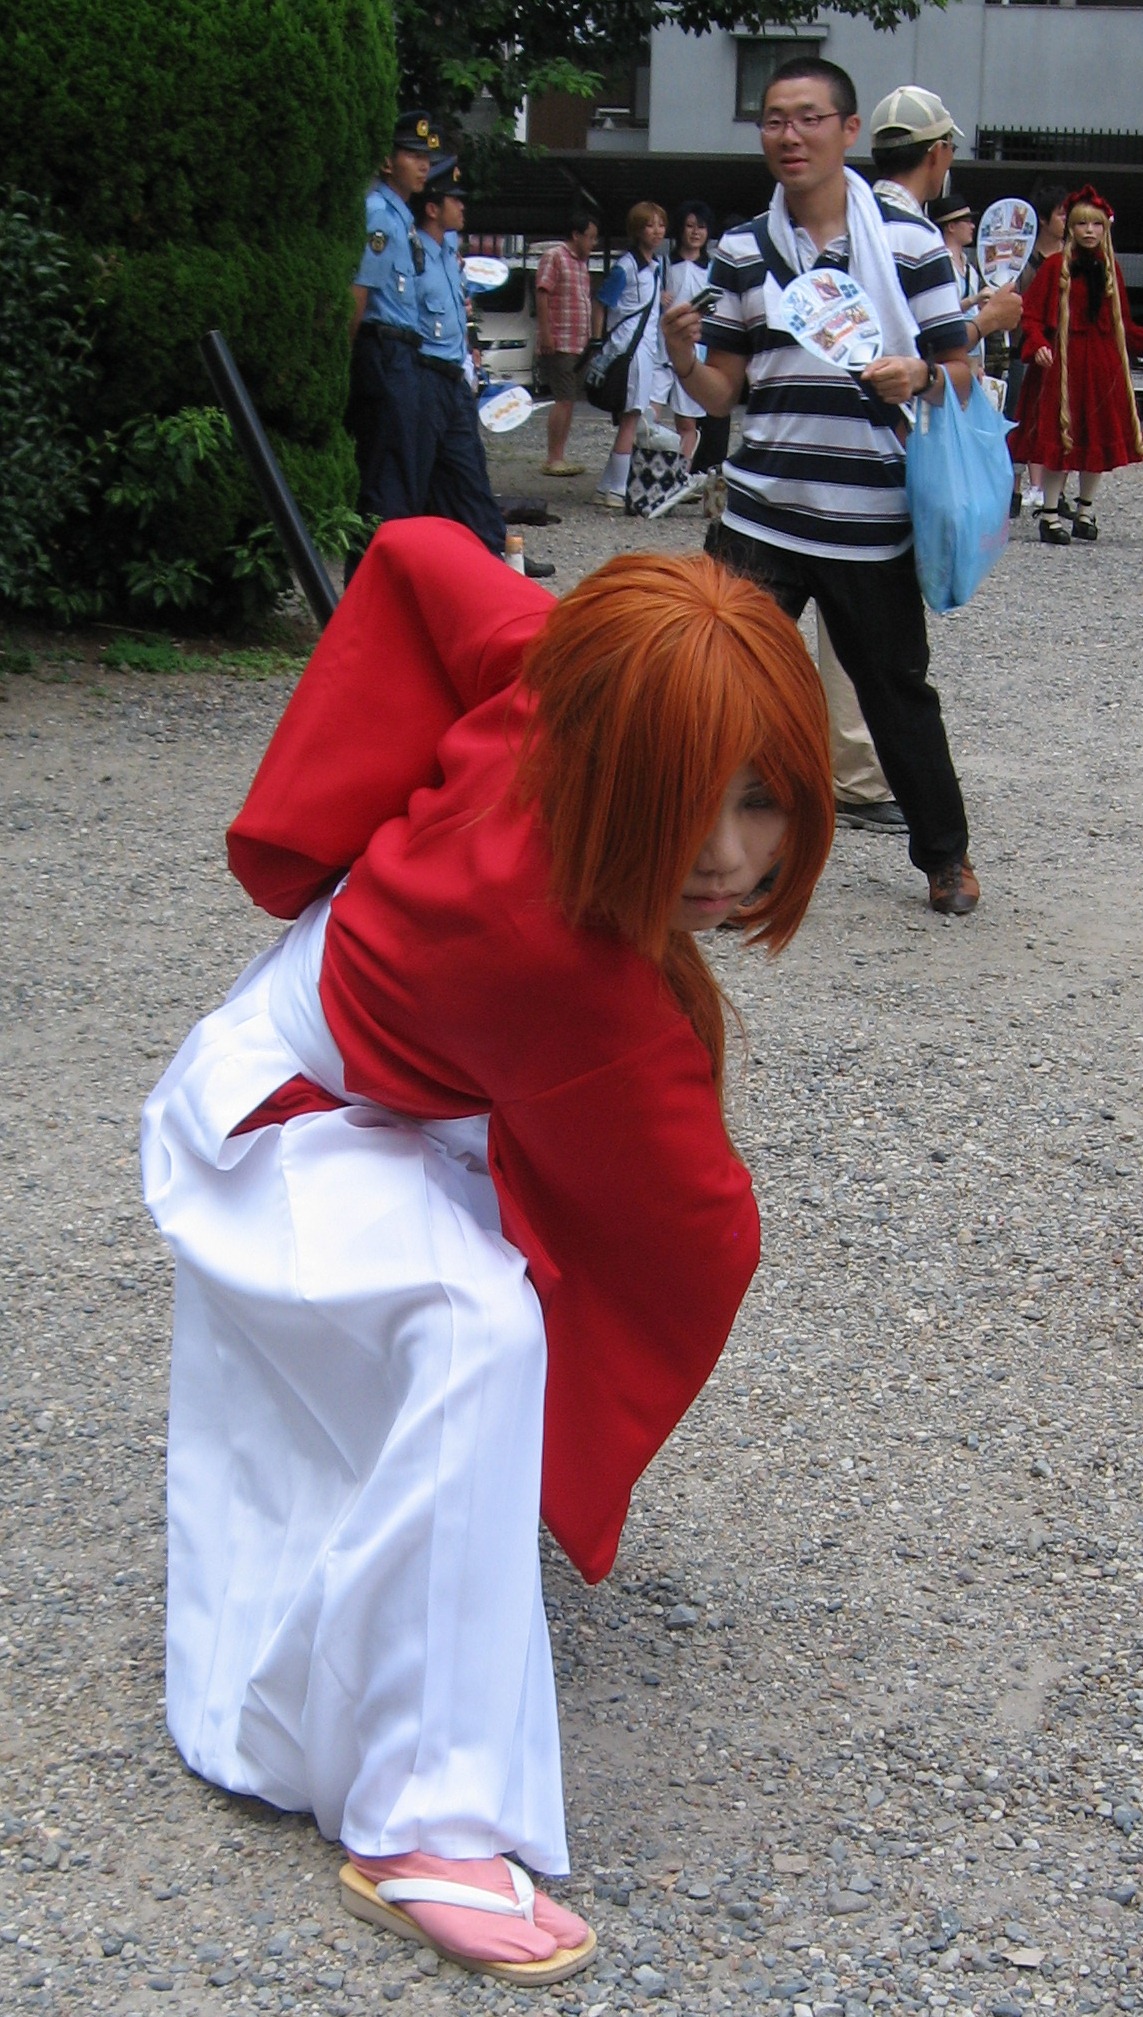 Rurouni Kenshin Himura Kenshin Cosplay Costume Outfits Halloween Carnival  Suit